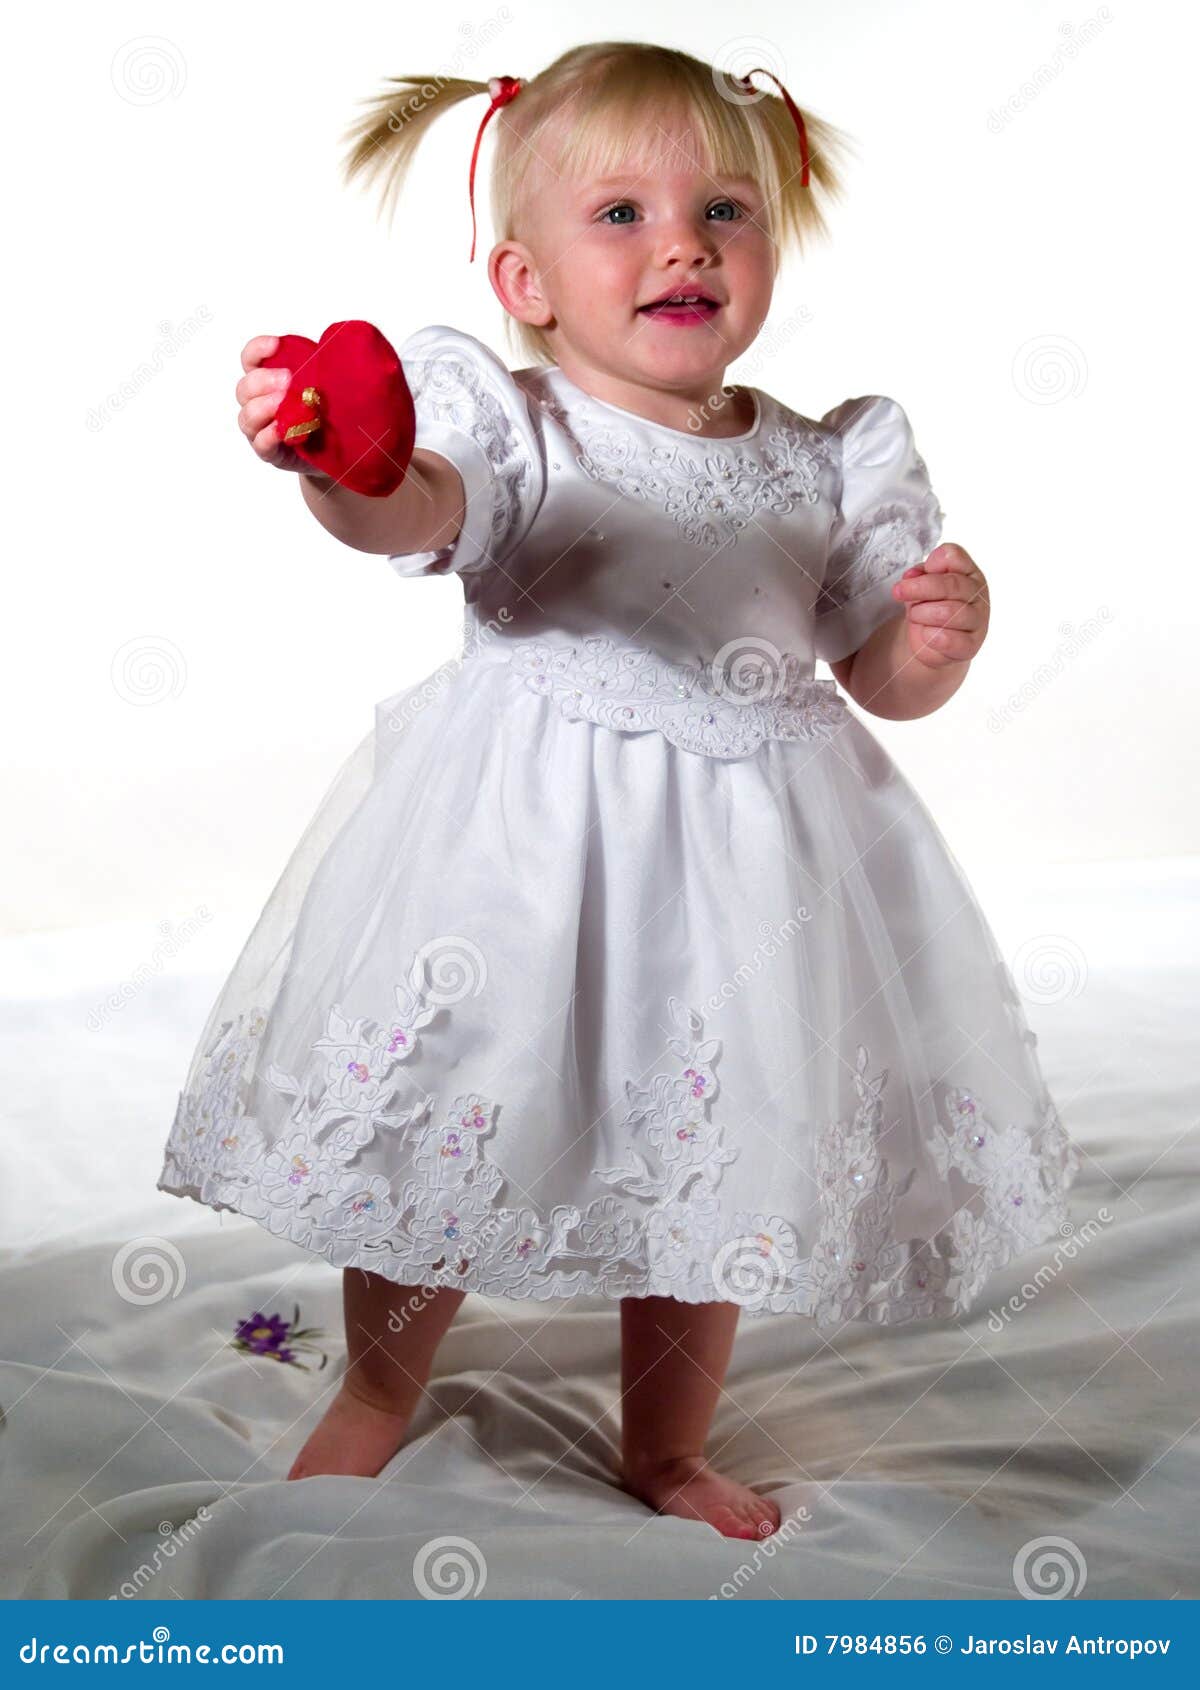 婴孩洗礼仪式女孩褂子 库存照片. 图片 包括有 婴孩, 年轻, 空白, 系列, 孩子, 无辜, 野蛮时代, 相当 - 425692